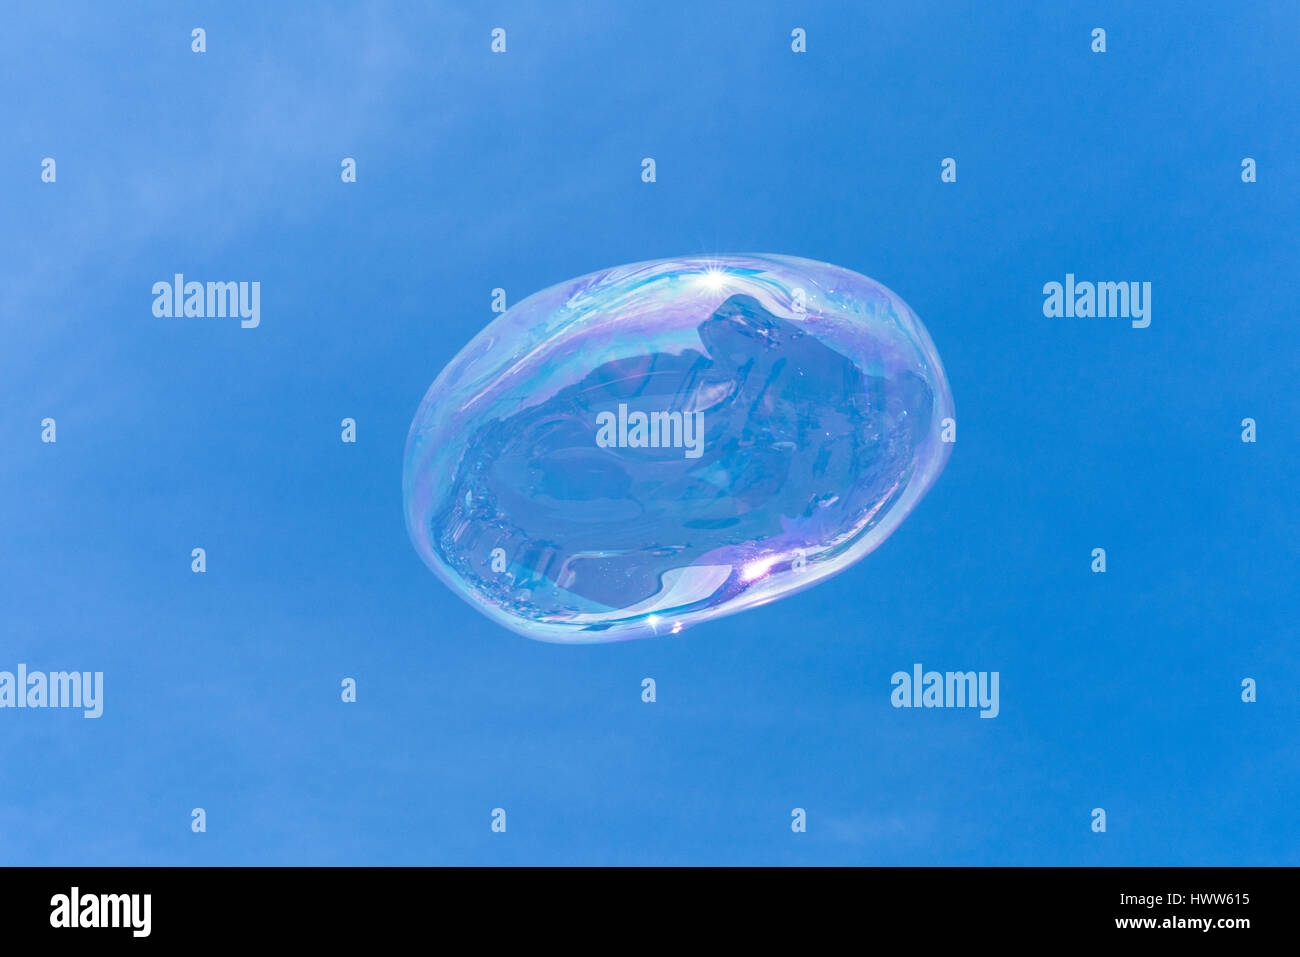 Una bolla di sapone galleggianti nel cielo blu con riflessioni Foto Stock